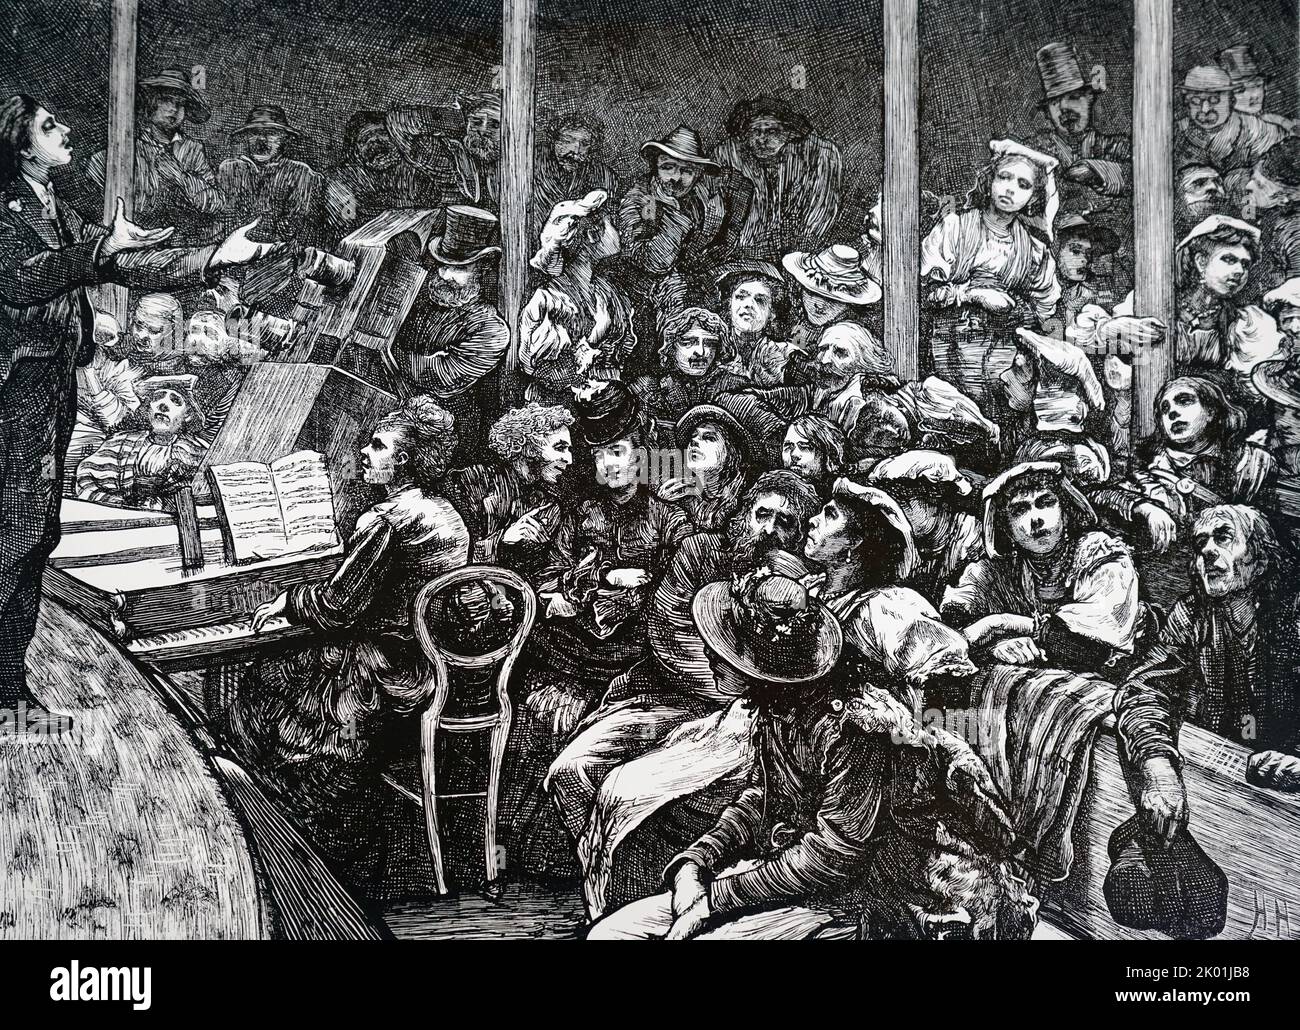 Trabajadores italianos pobres en Londres disfrutando de un entretenimiento. De The Graphic, Londres, 1 de marzo de 1871. Foto de stock